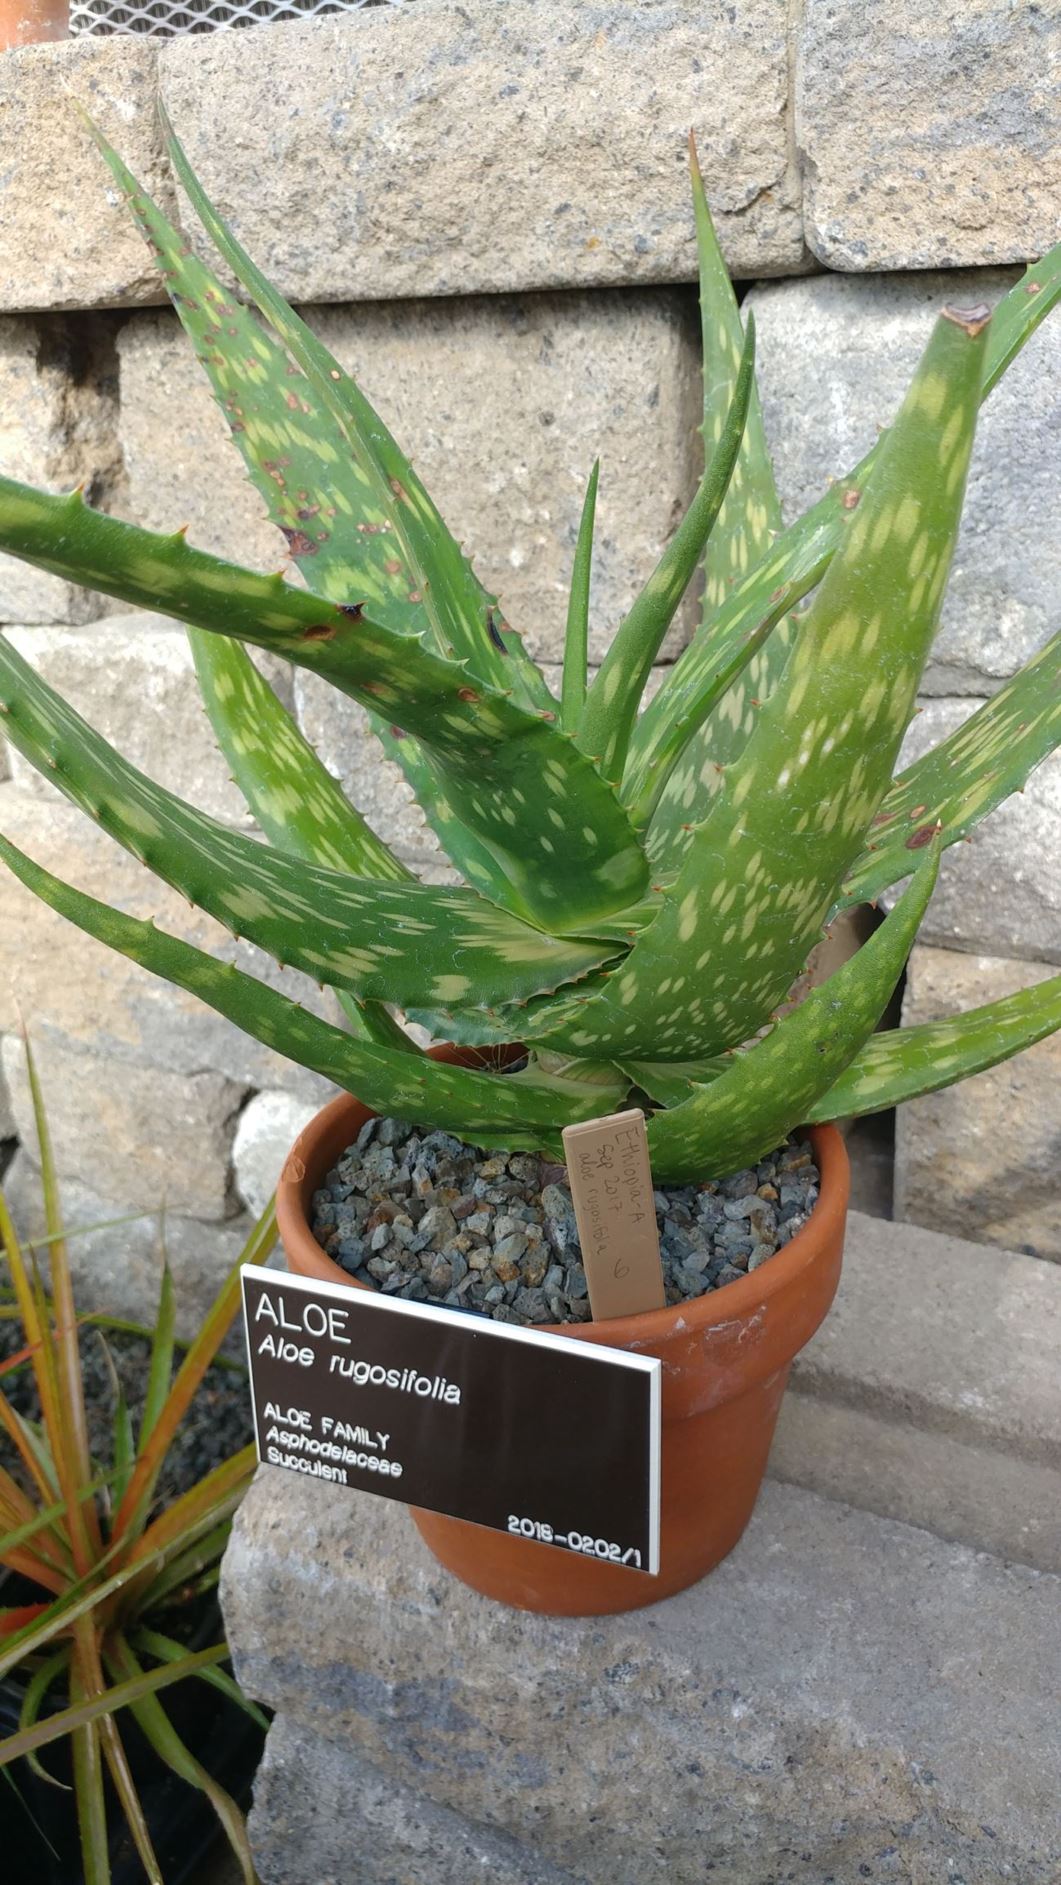 Aloe rugosifolia - aloe